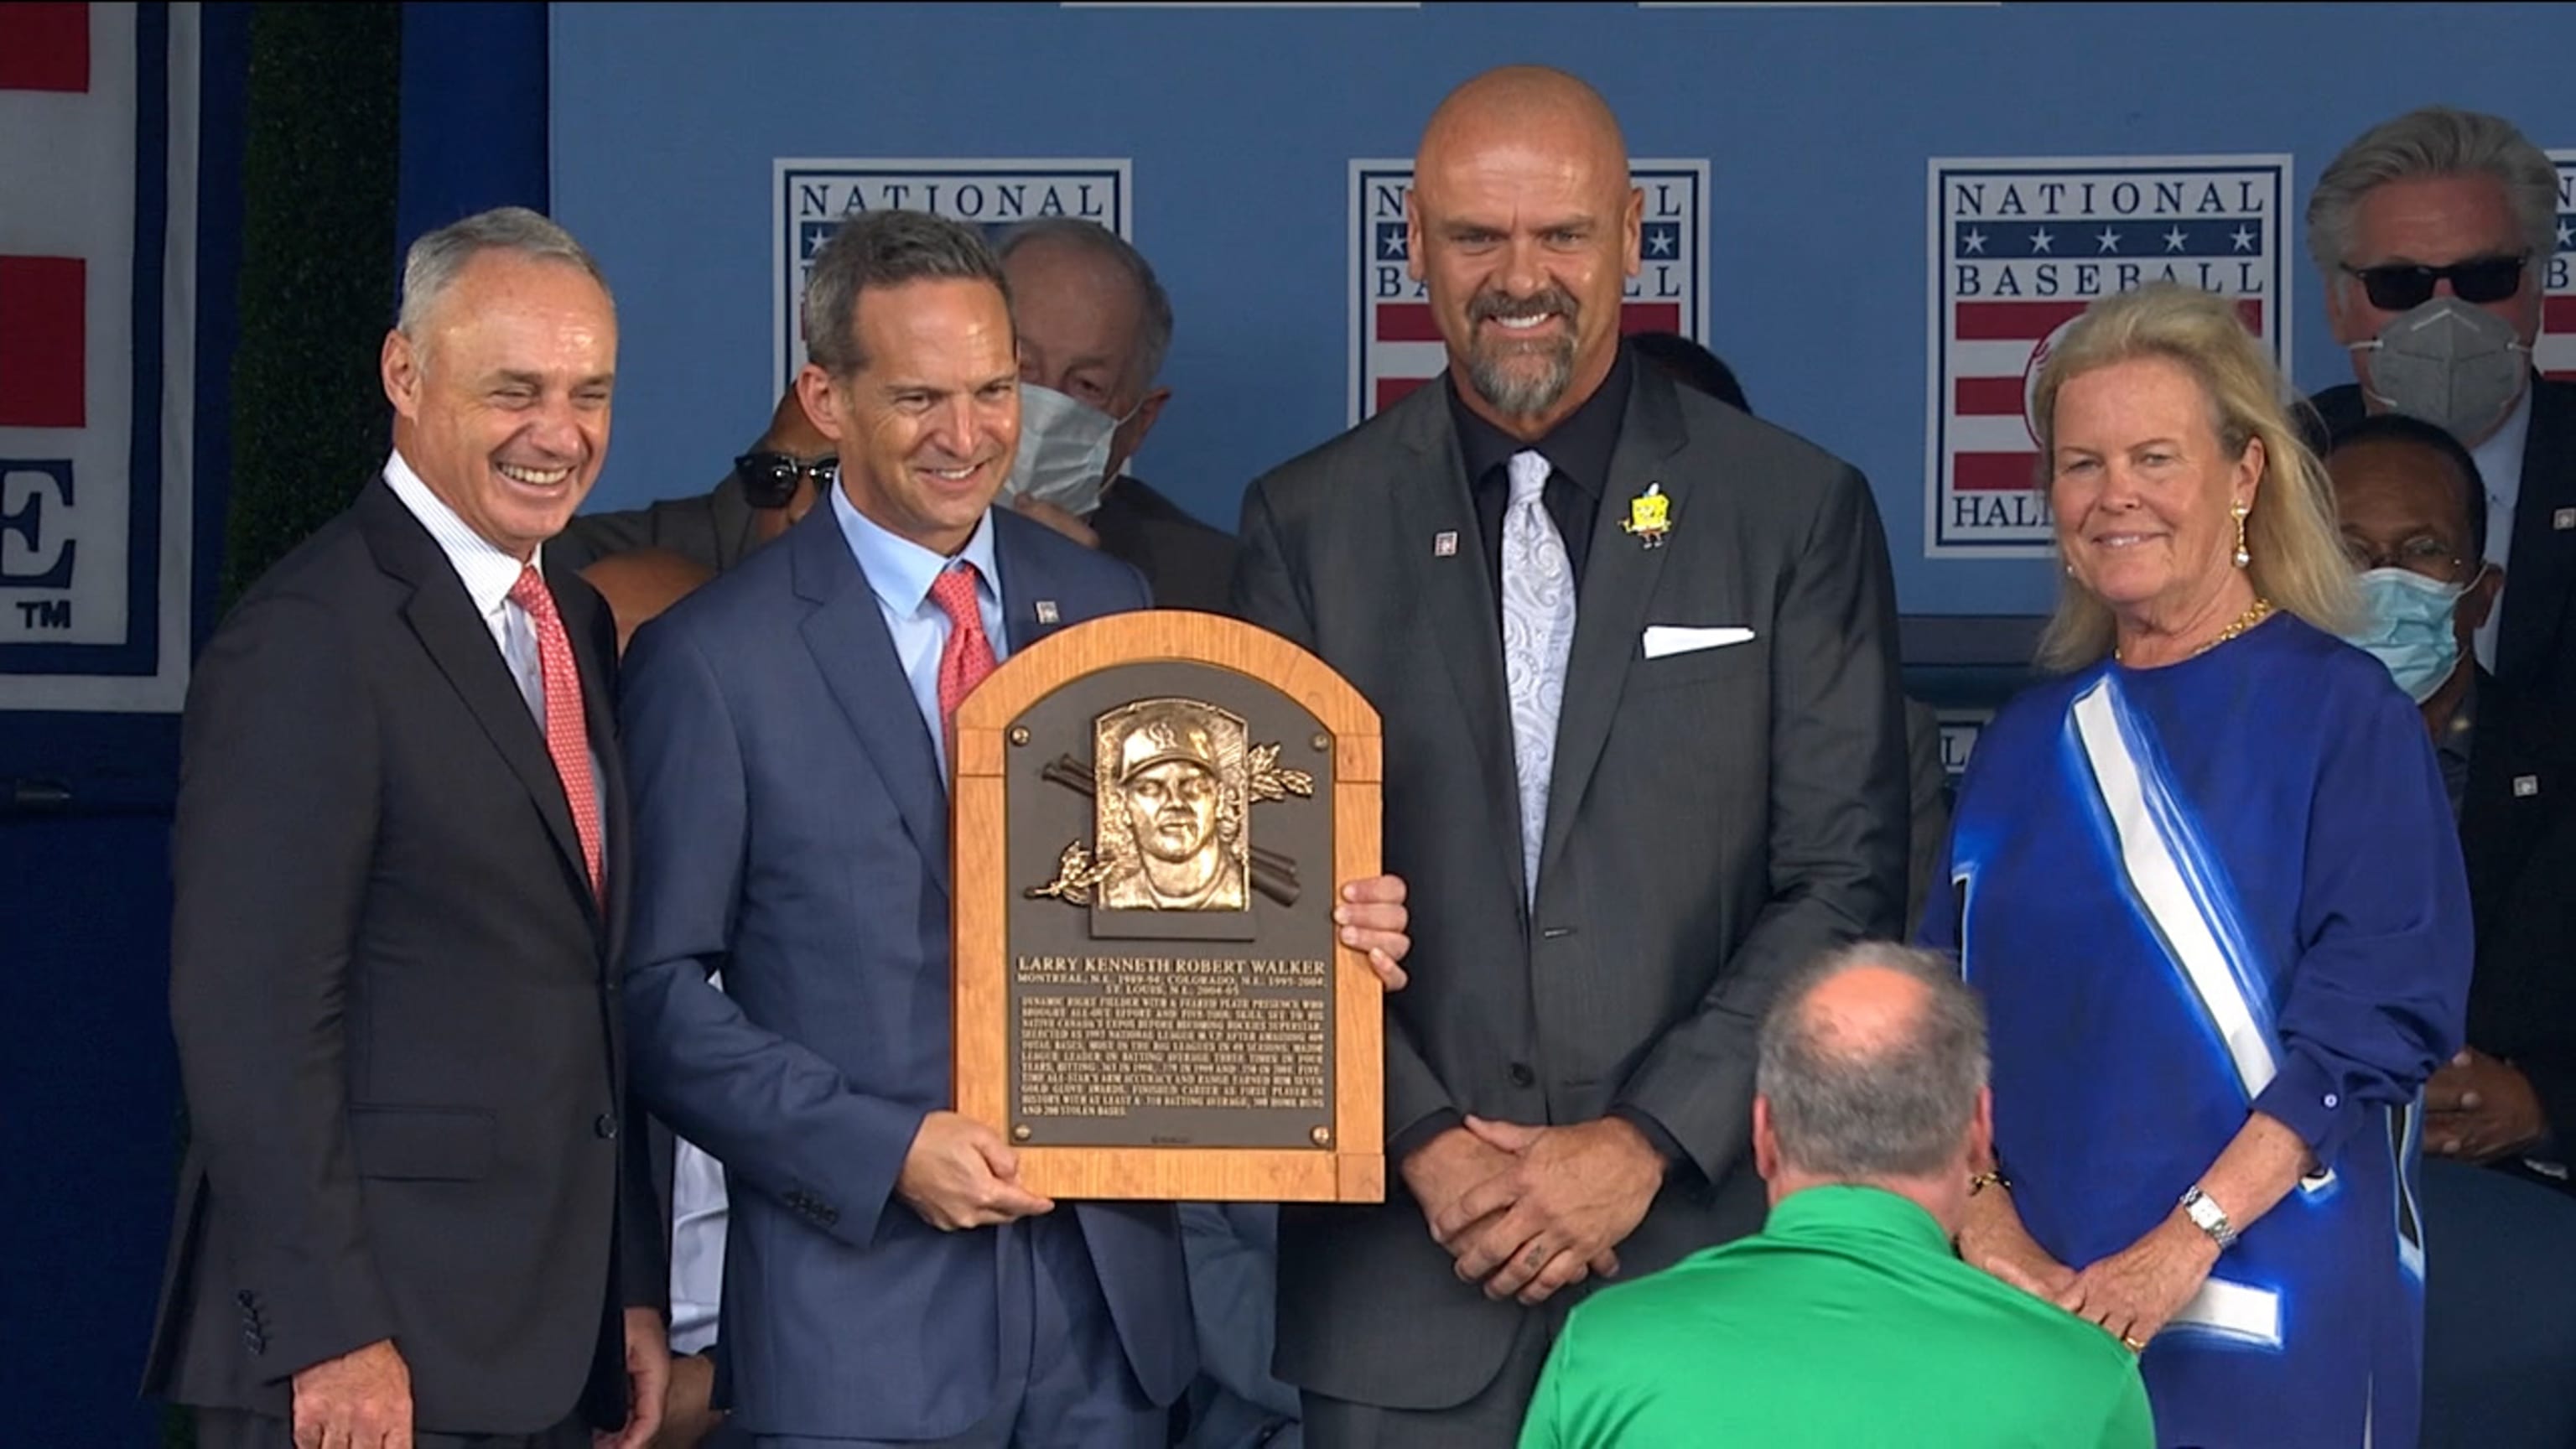 Walker, Larry  Baseball Hall of Fame